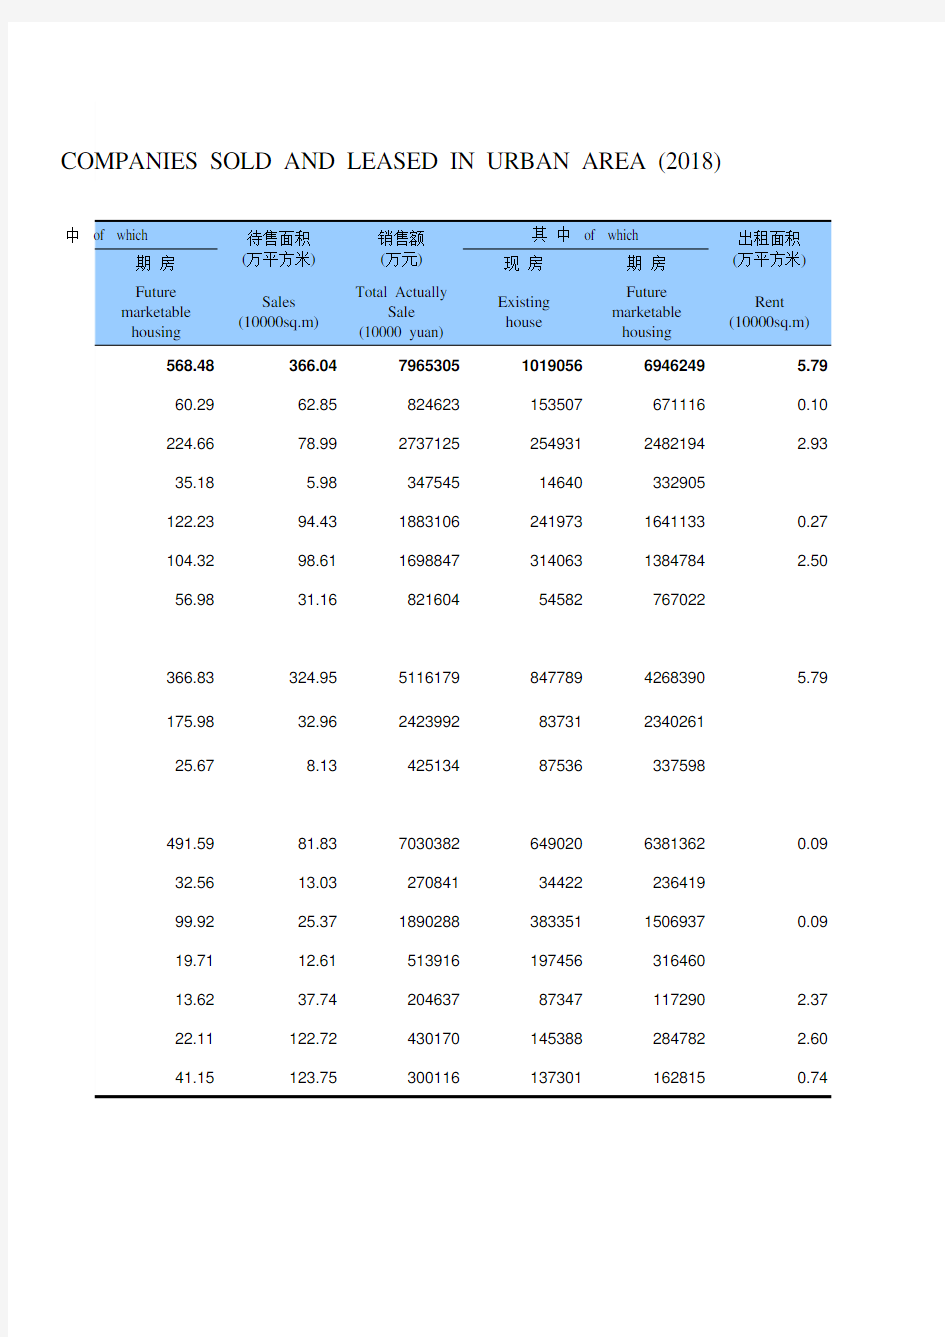 江苏常州市统计年鉴社会经济发展指标数据：9-7 市区房地产开发企业商品房销售和出租情况(2018年)